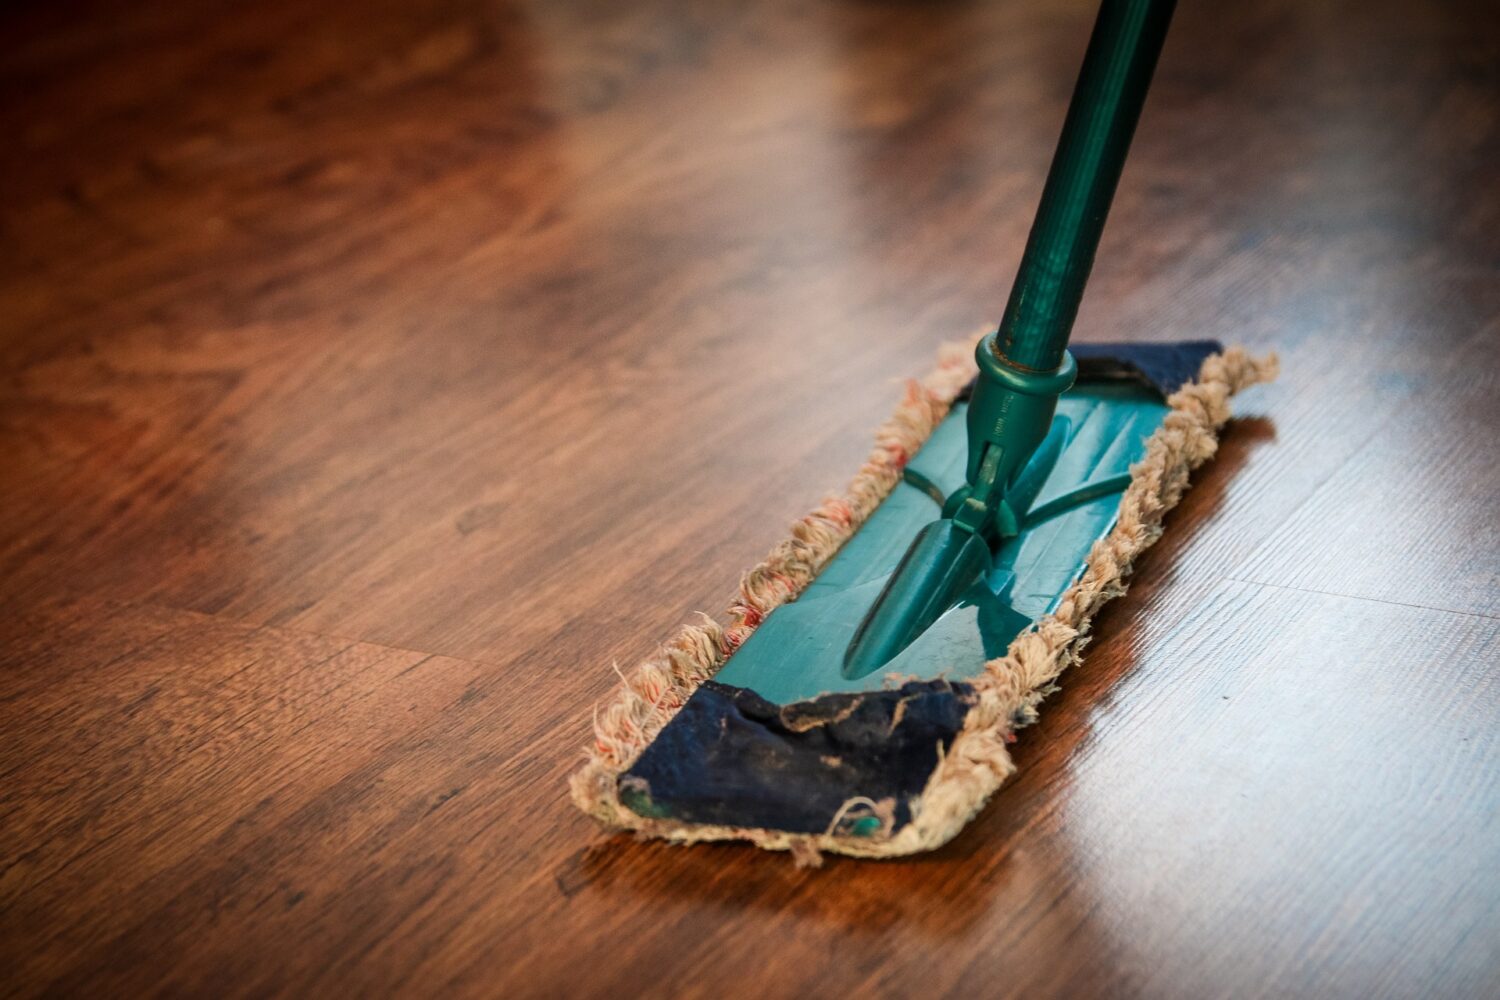 Αυτά είναι τα πιο βρώμικα σημεία του σπιτιού σου που ξεχνάς να καθαρίσεις